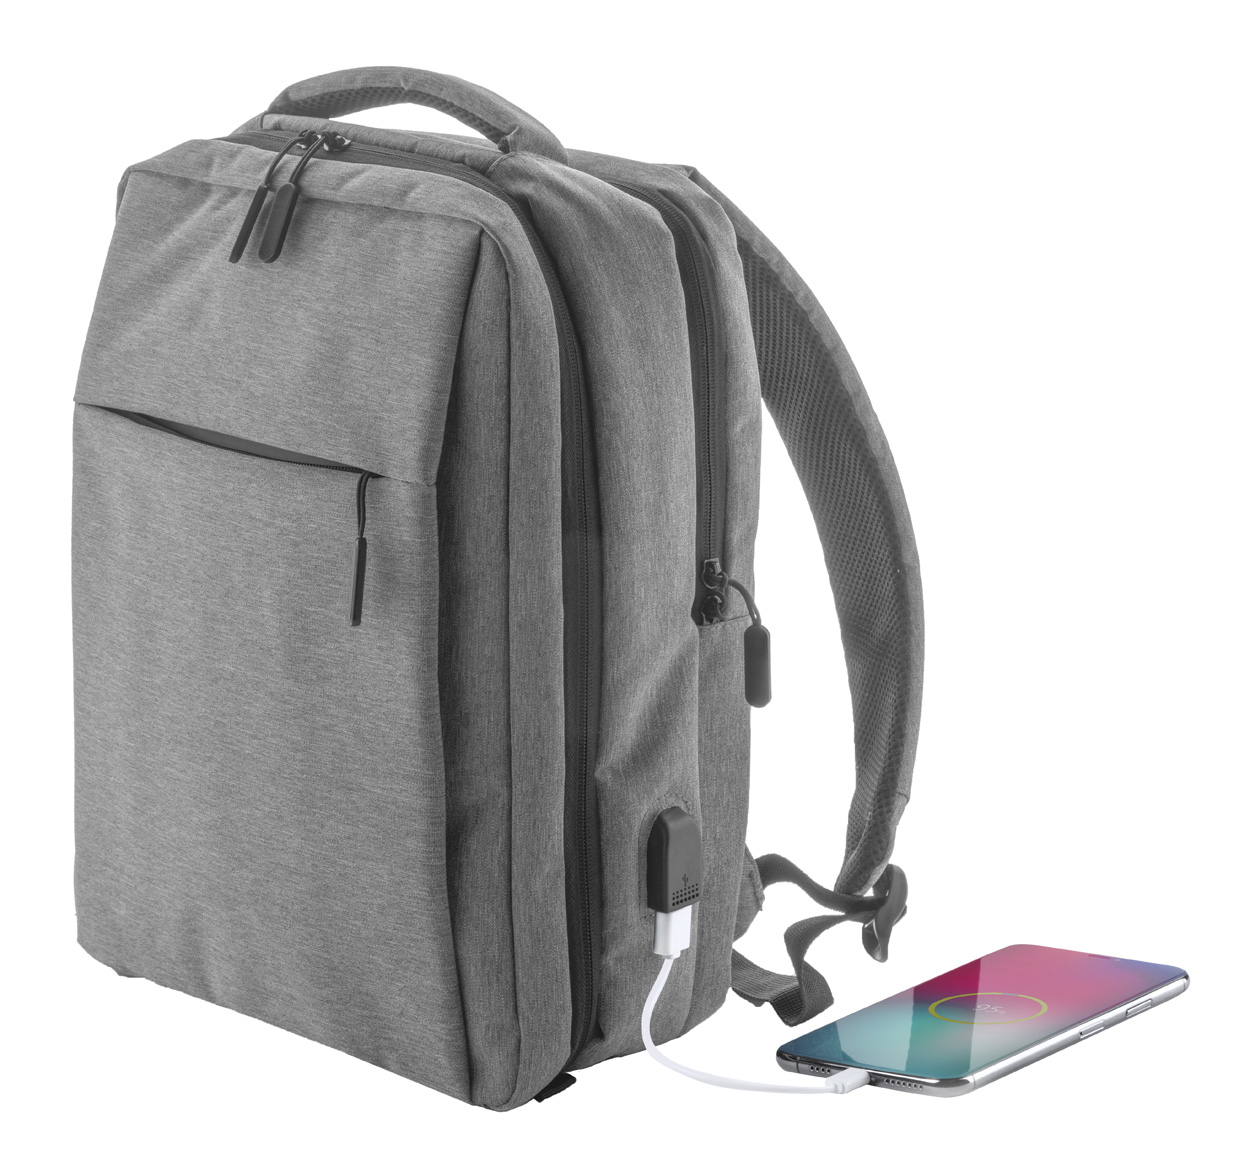 Polyesterový městský batoh BRANSON s prostorem na notebook - tmavě šedá